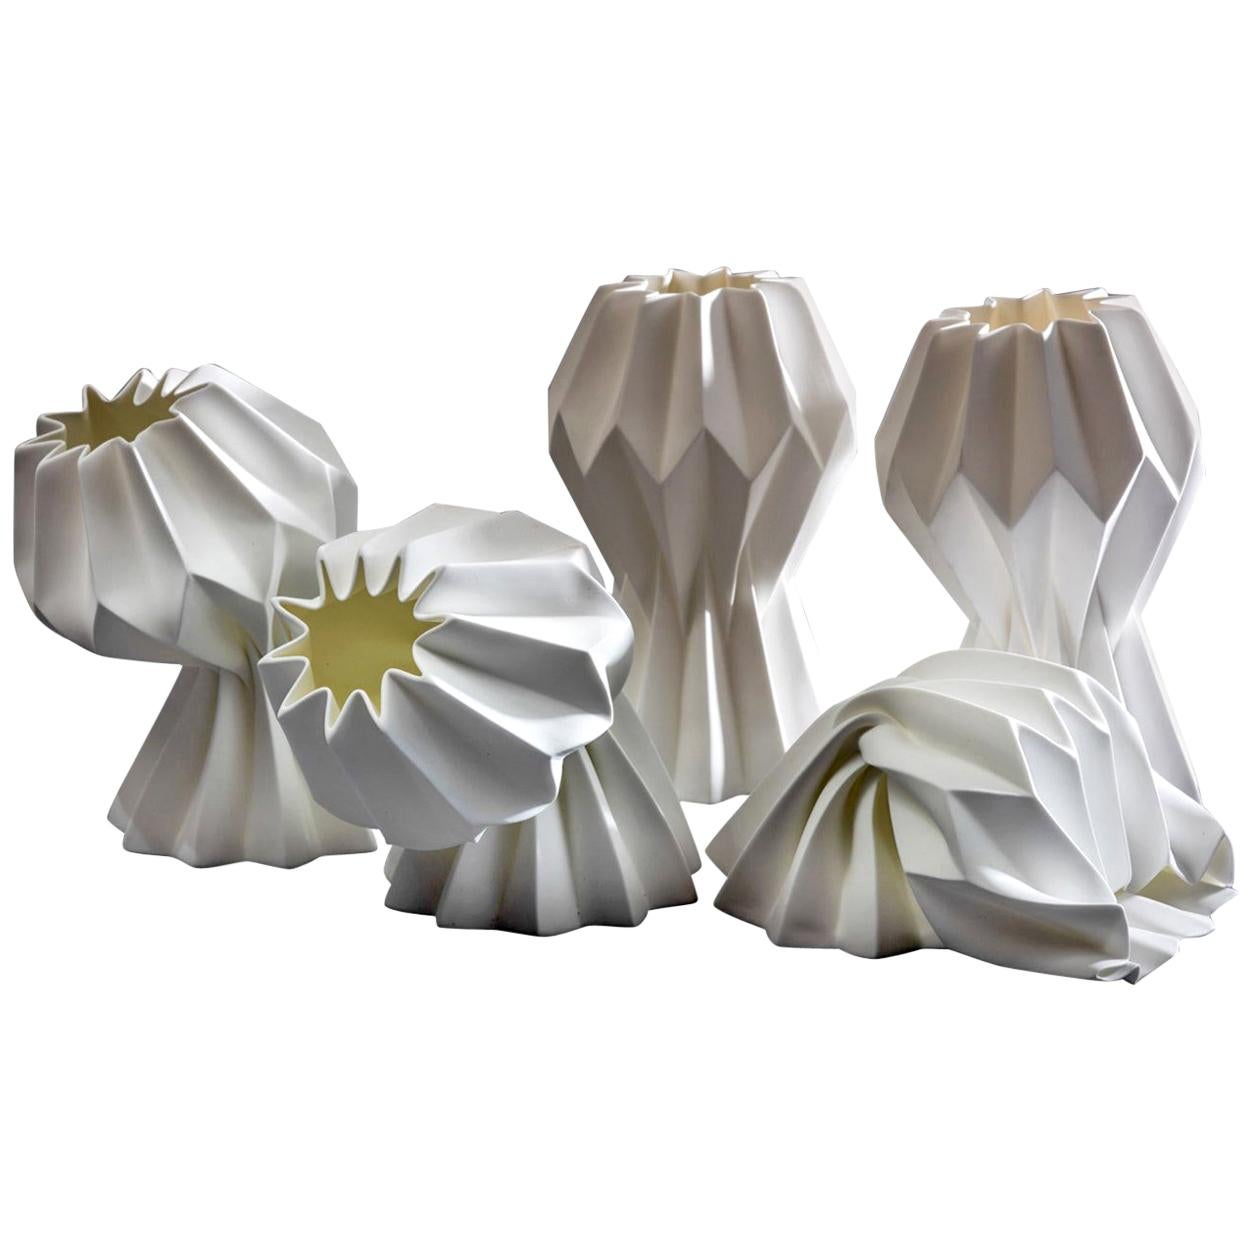 “Slump” Contemporary Origami Ceramic Vase by Studio Morison, No Slump Variation